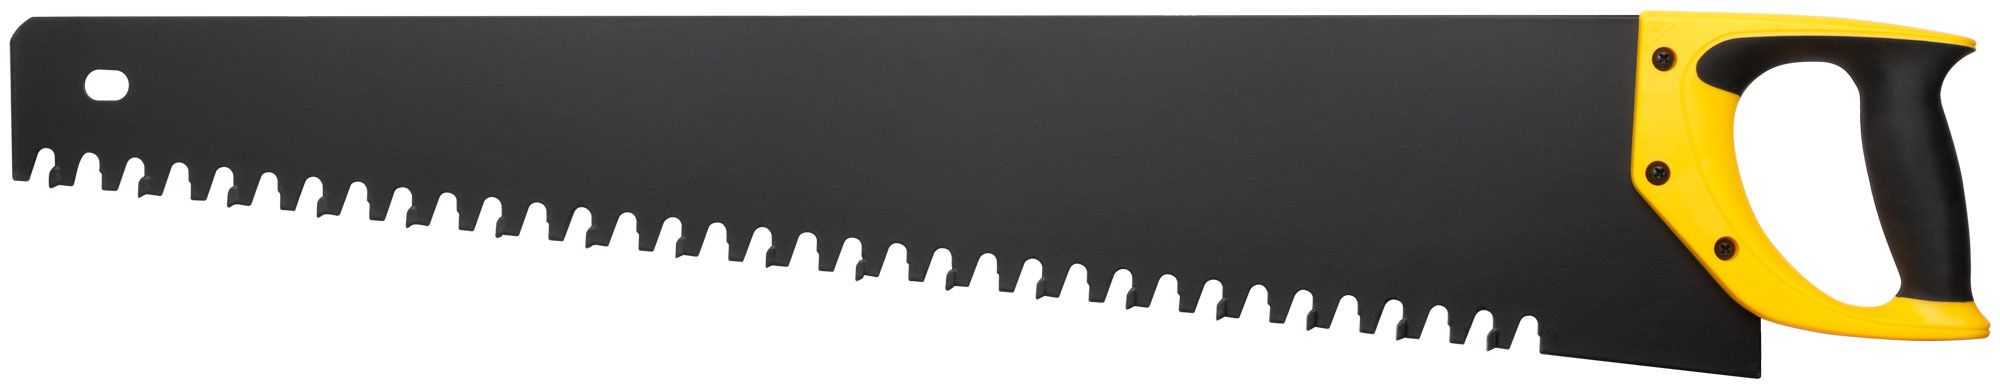 Ножовка по пенобетону, карбидные вставки на каждом 2-ом зубе, прорезиненная ручка 700 мм (Изображение 1)